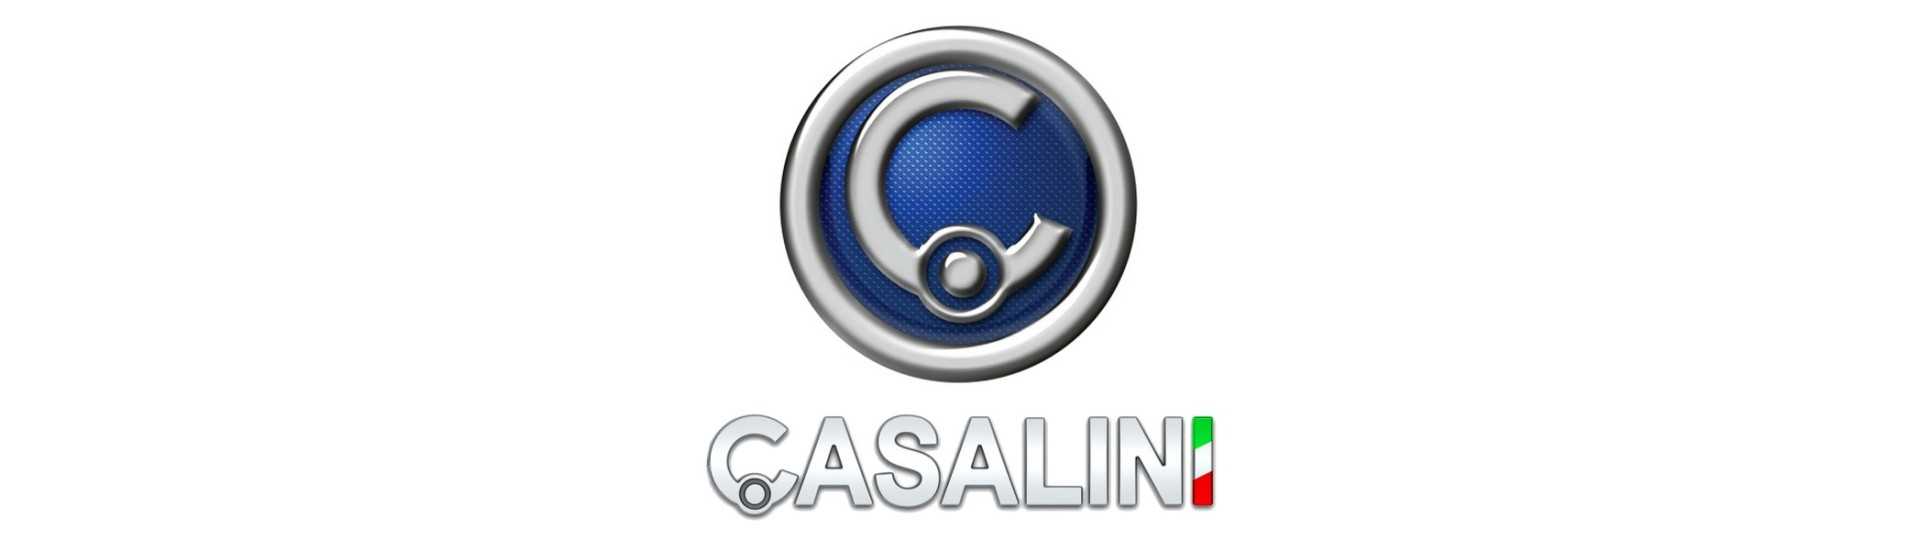 Pack de ruedas al mejor precio para coches sin carnet Casalini